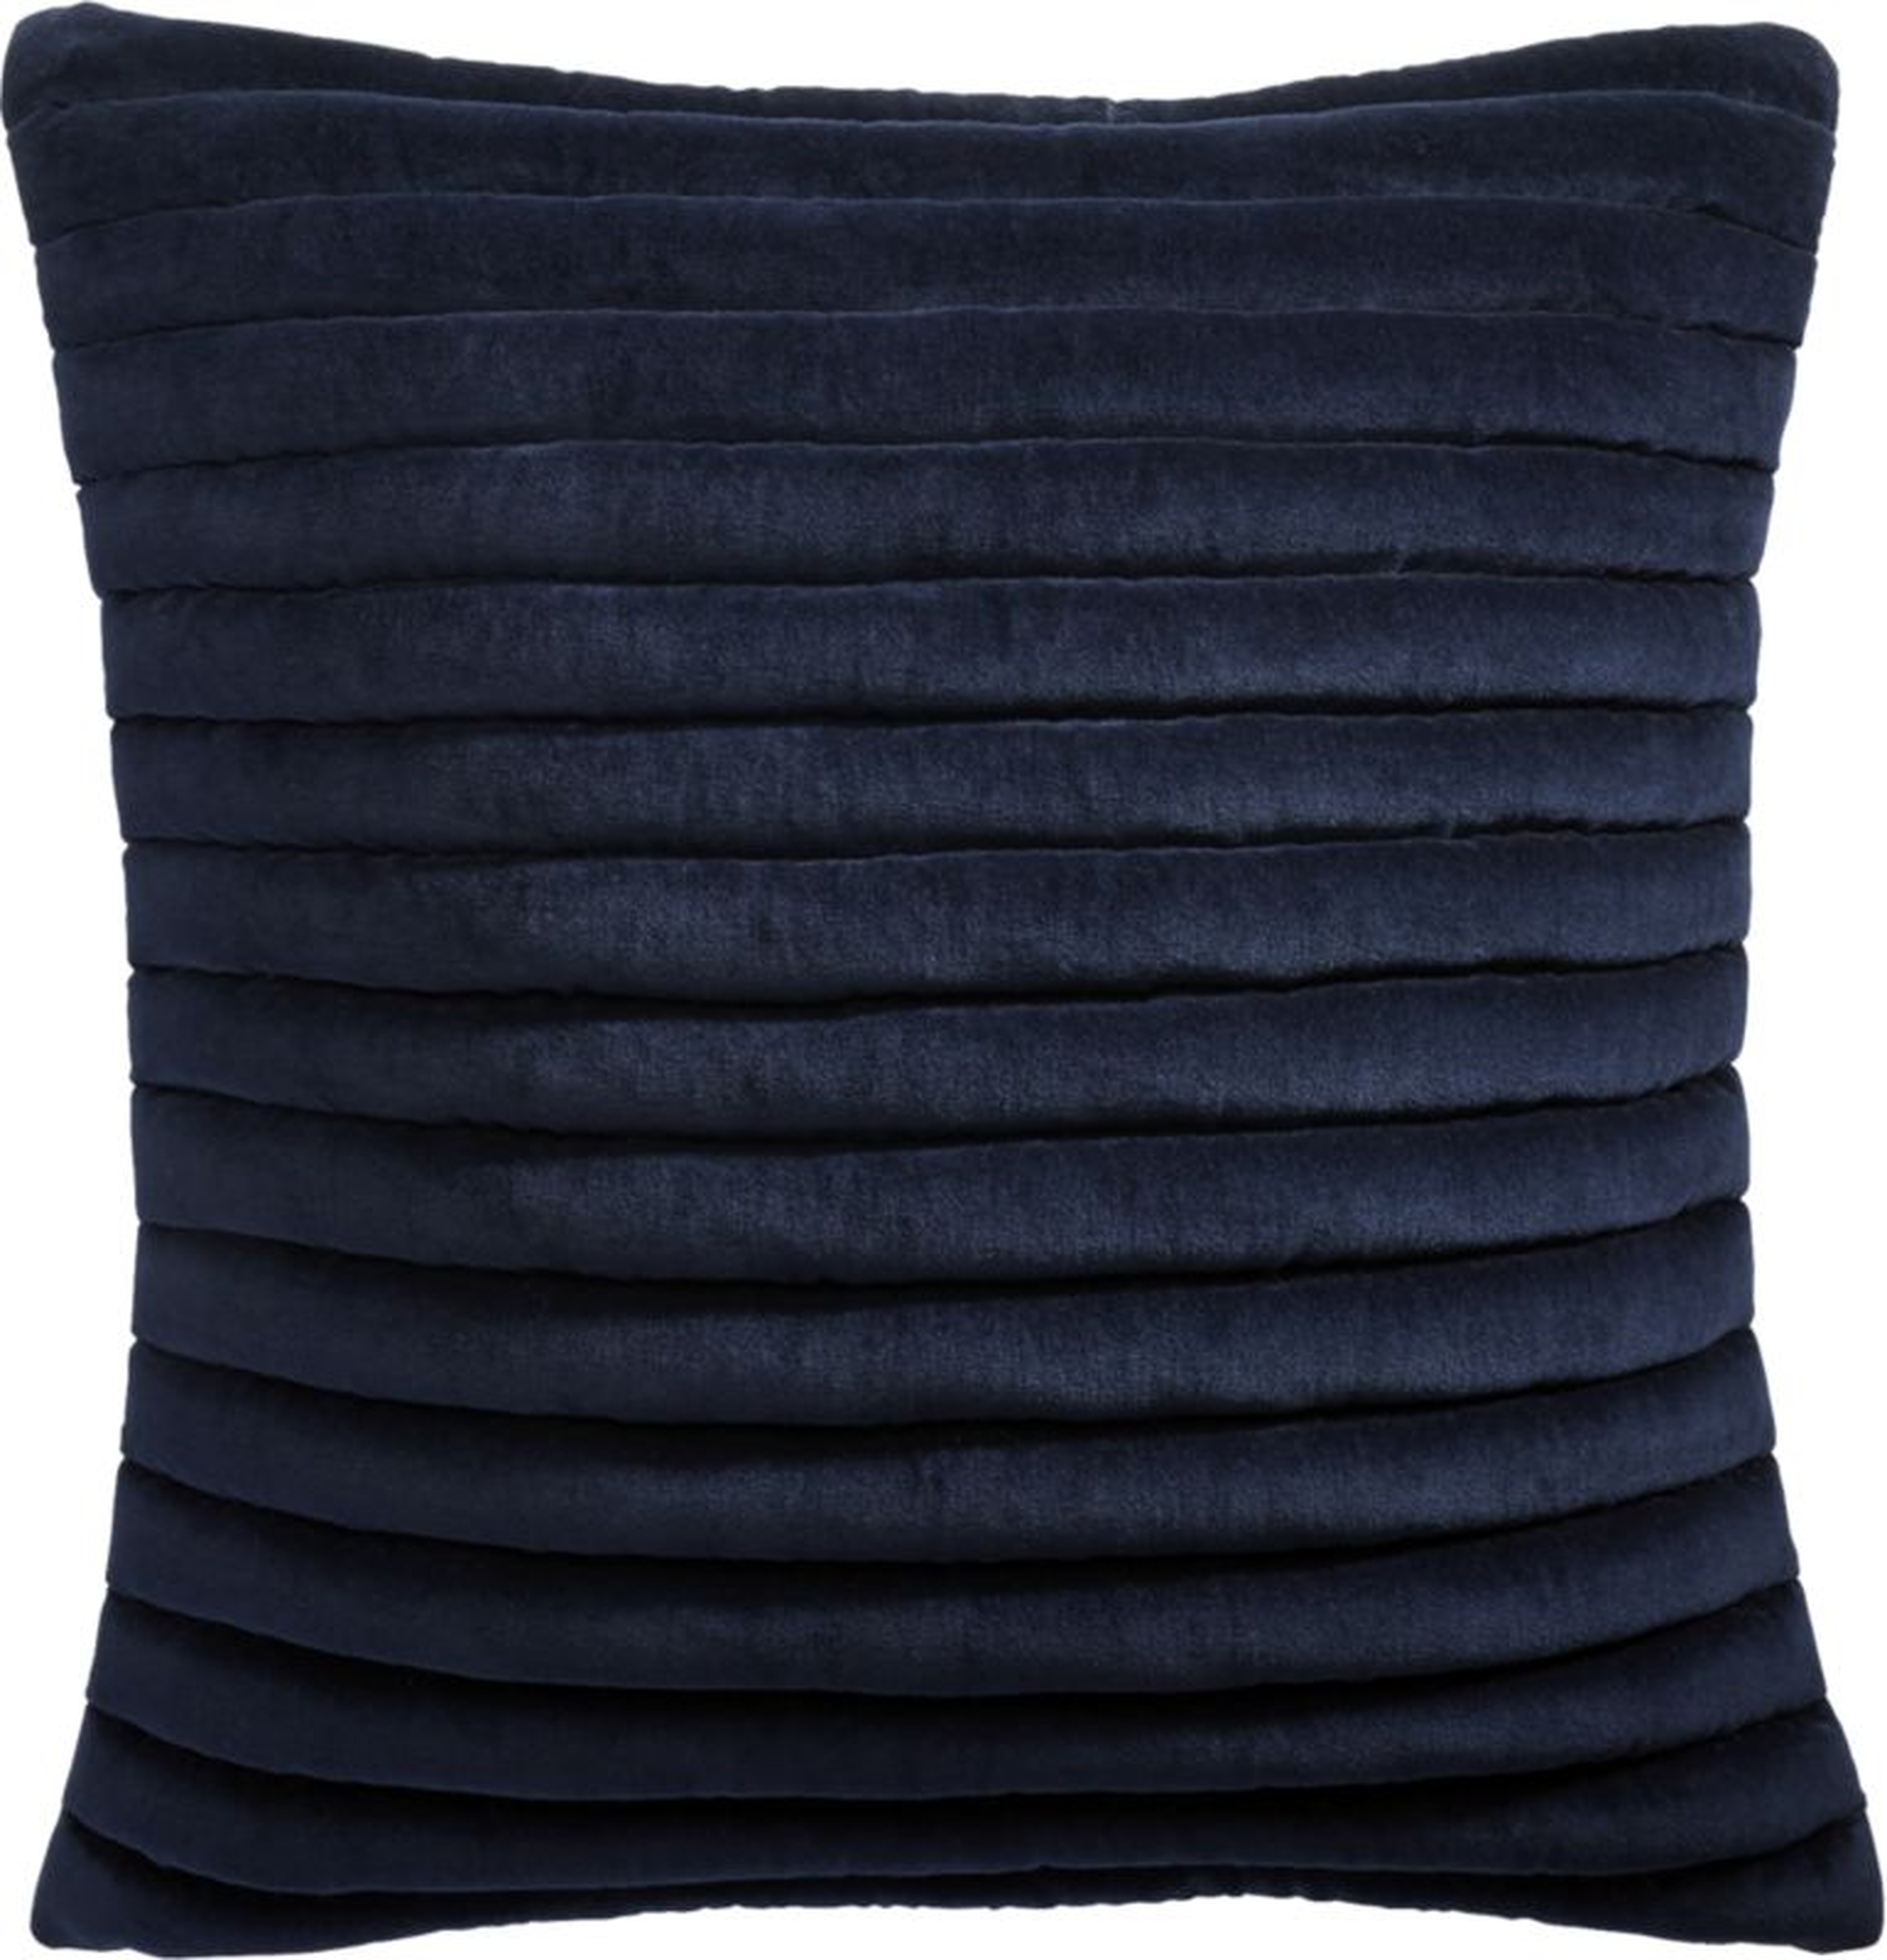 18" Channeled Navy Velvet Pillow with Down-Alternative Insert - CB2